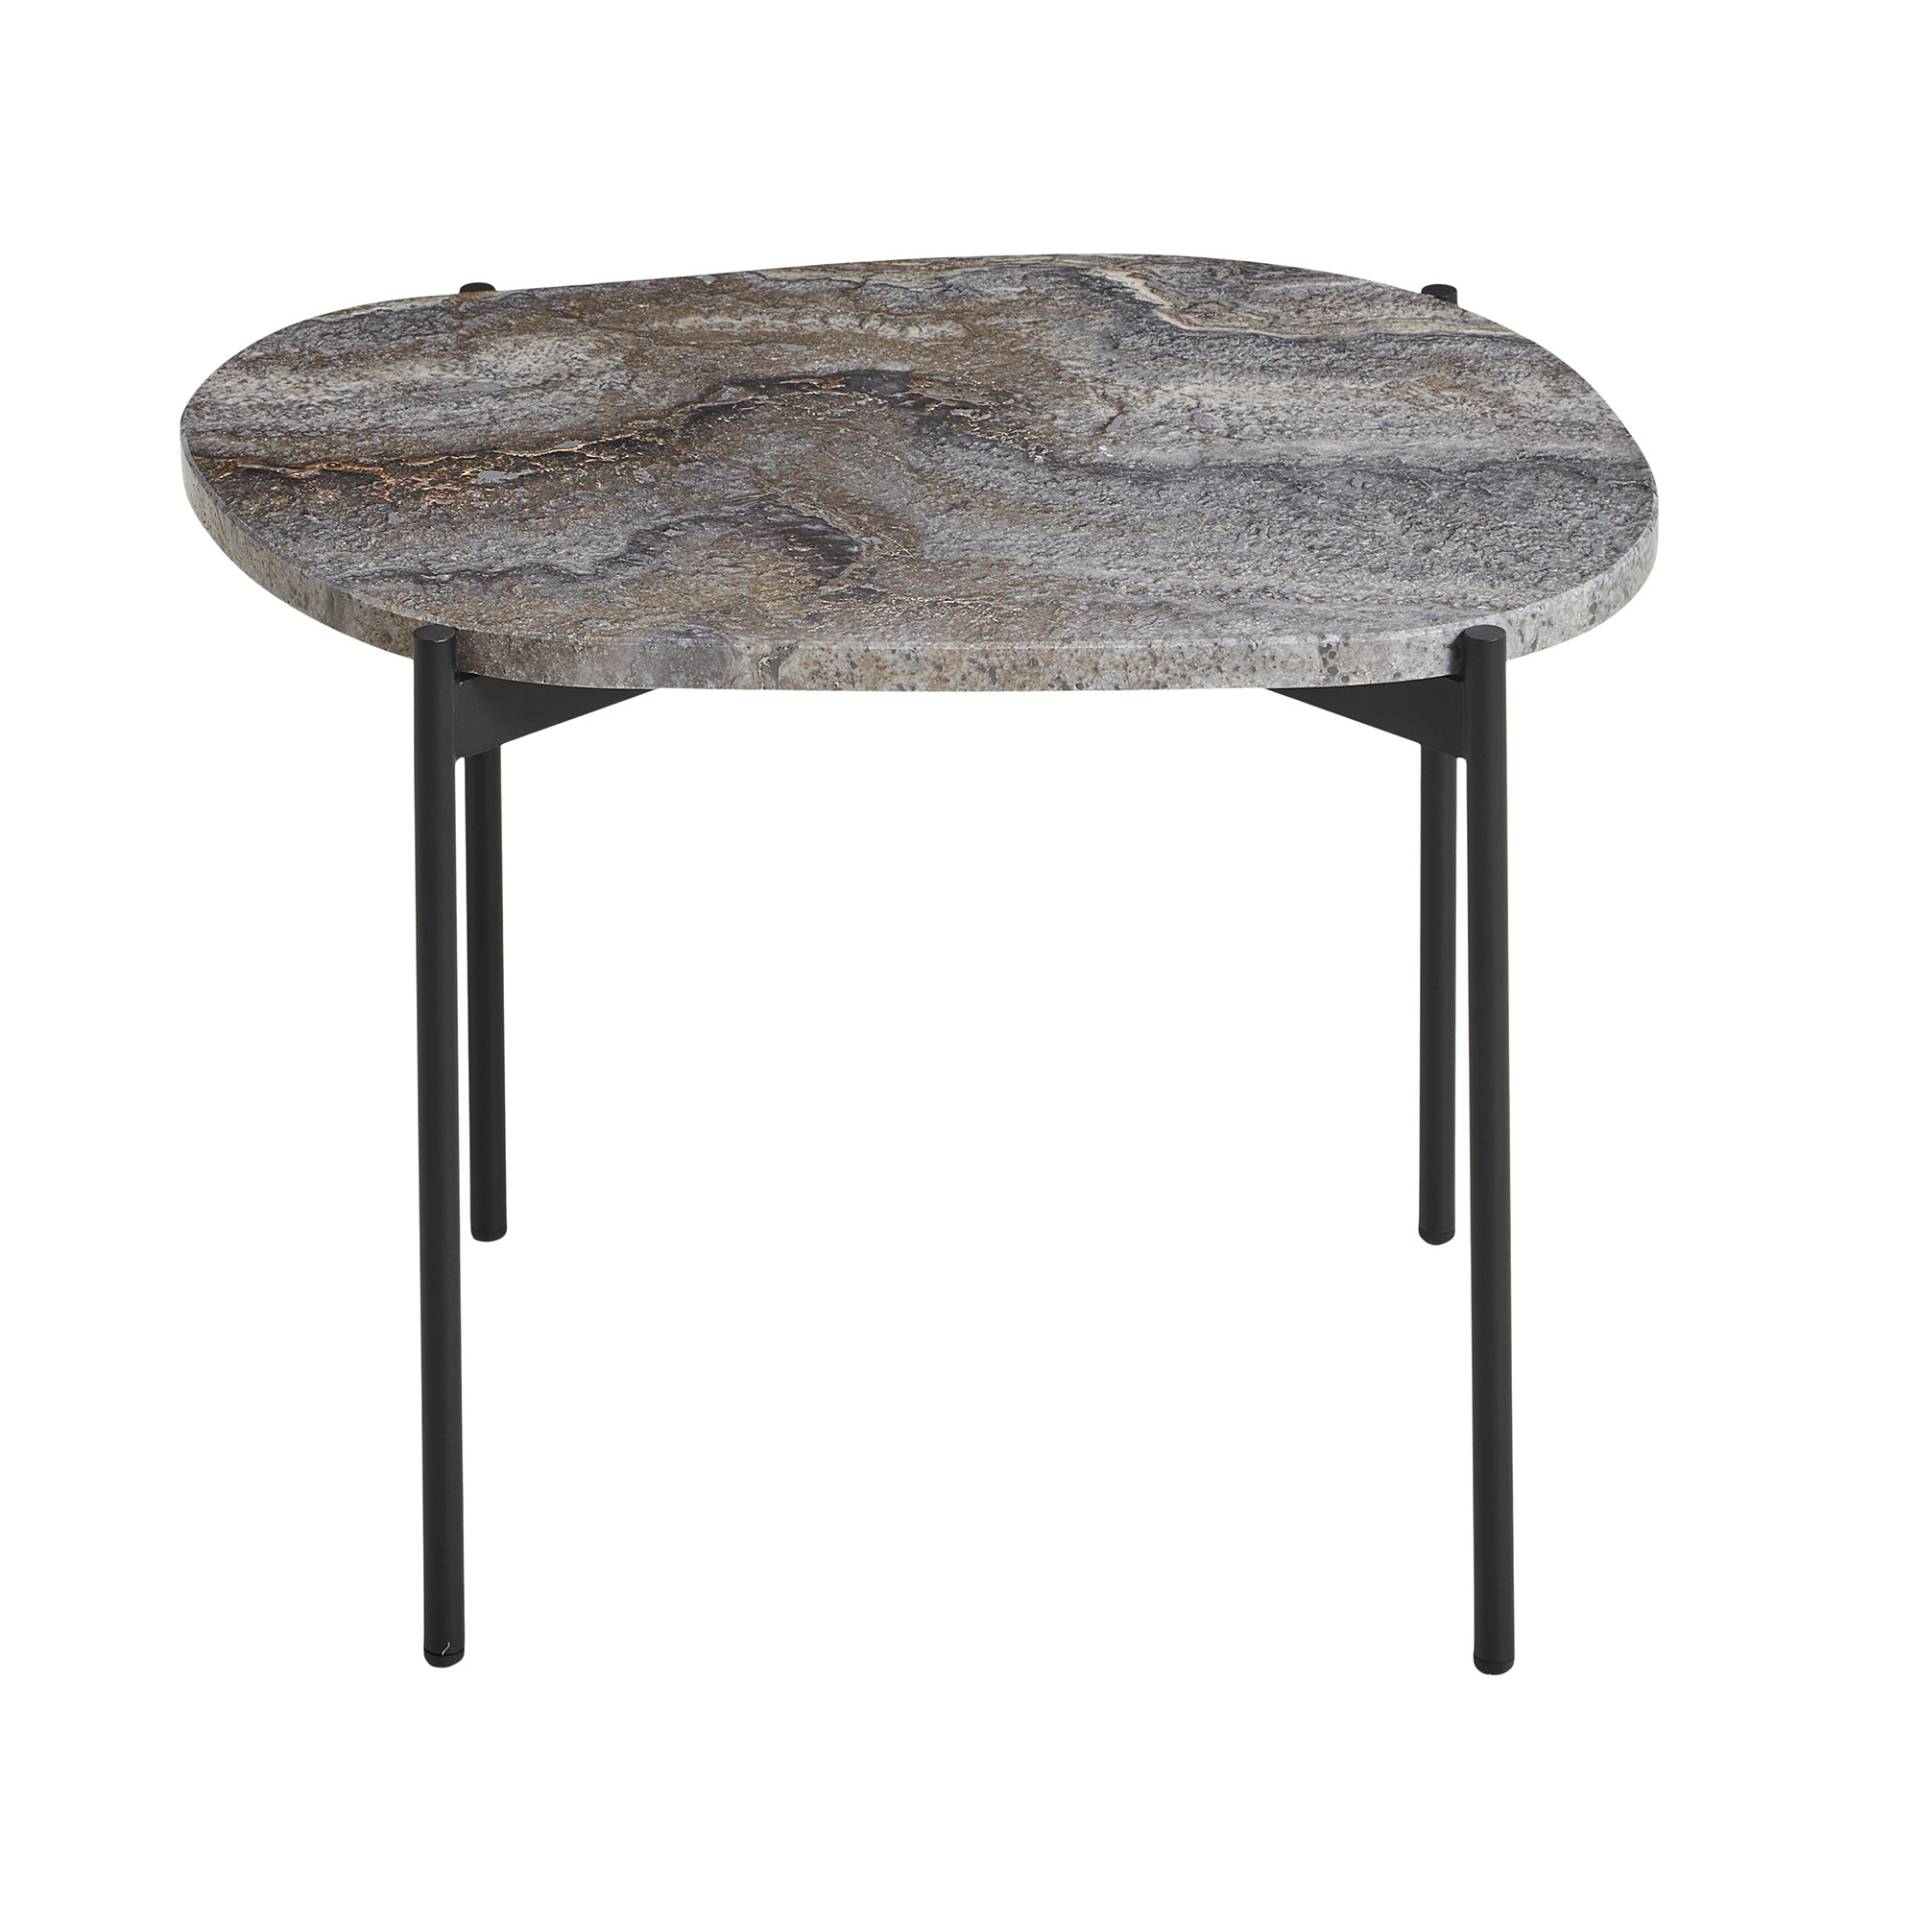 Woud - La Terra Beistelltisch M - grau/Tischplatte aus Travertin/Gestell Eisen pulverlackiert glatt/LxBxH 57,2x40,5x41cm von Woud